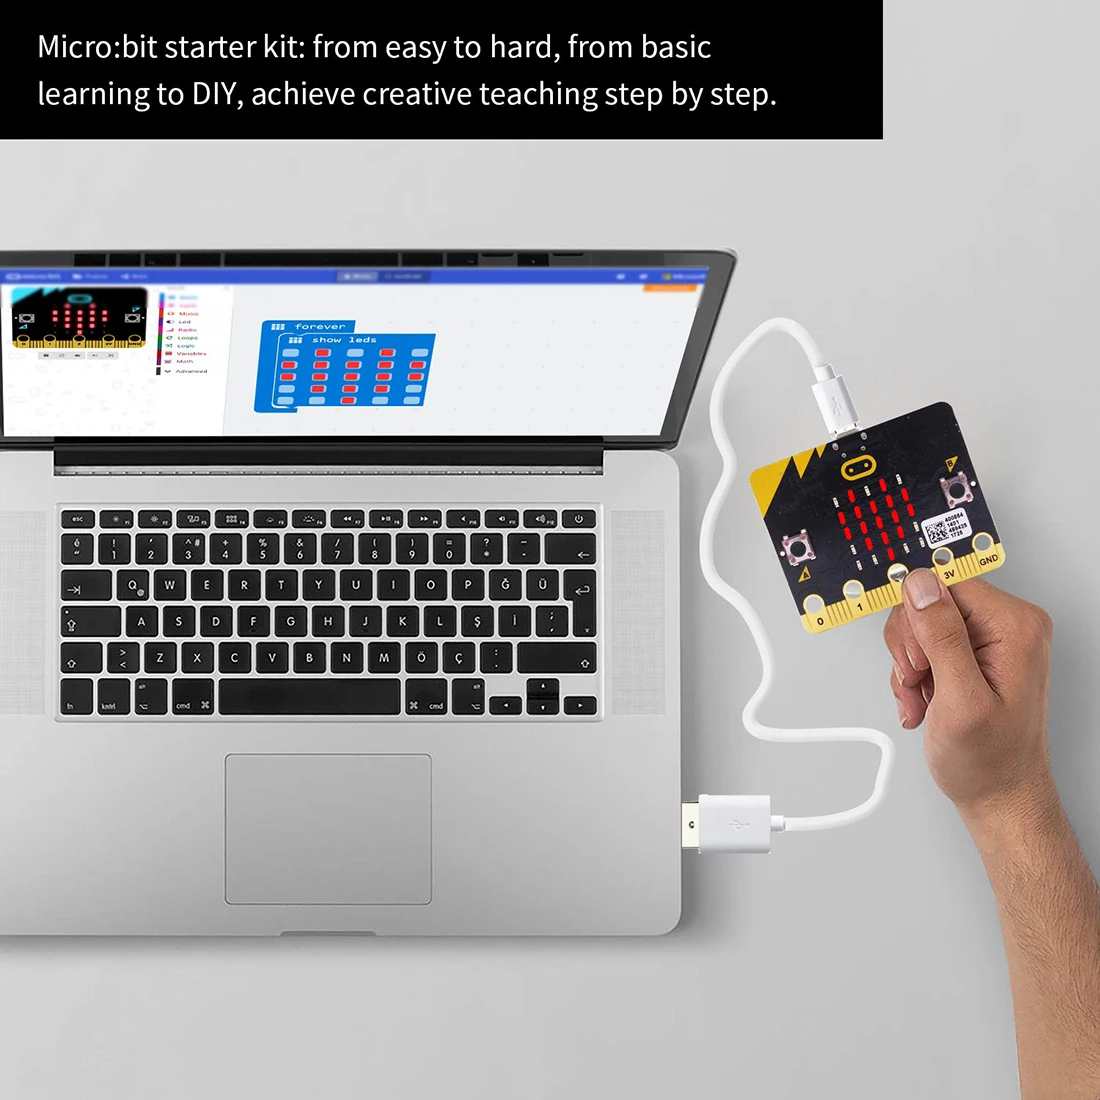 Микро: набор наконечников стартер обучающий комплект микро бит доска графические программируемые игрушки с руководством для детей